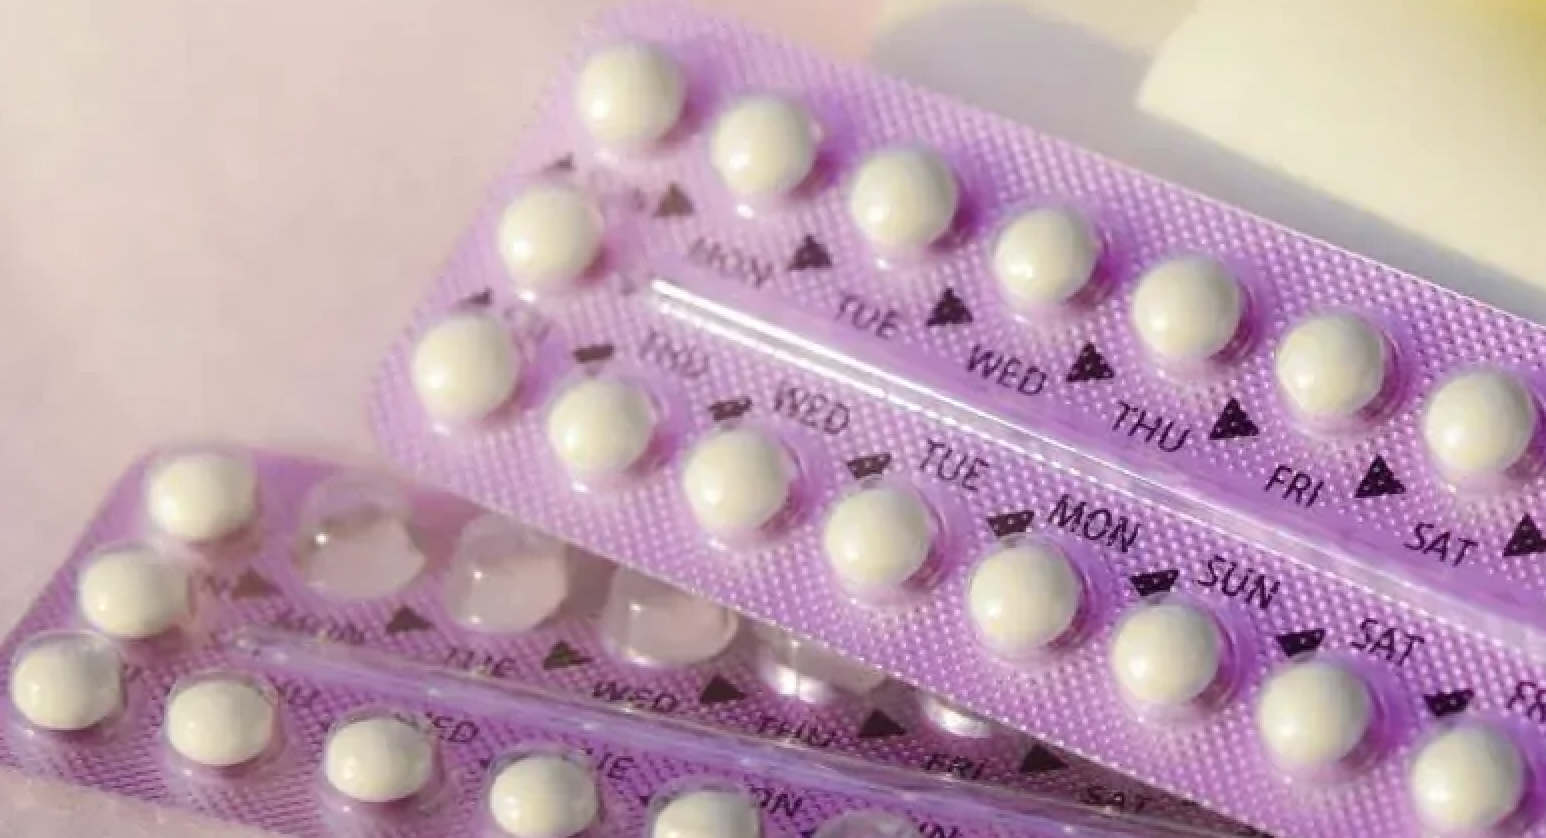 La pillola anticoncezionale diventerà gratuita, ok dell’Aifa